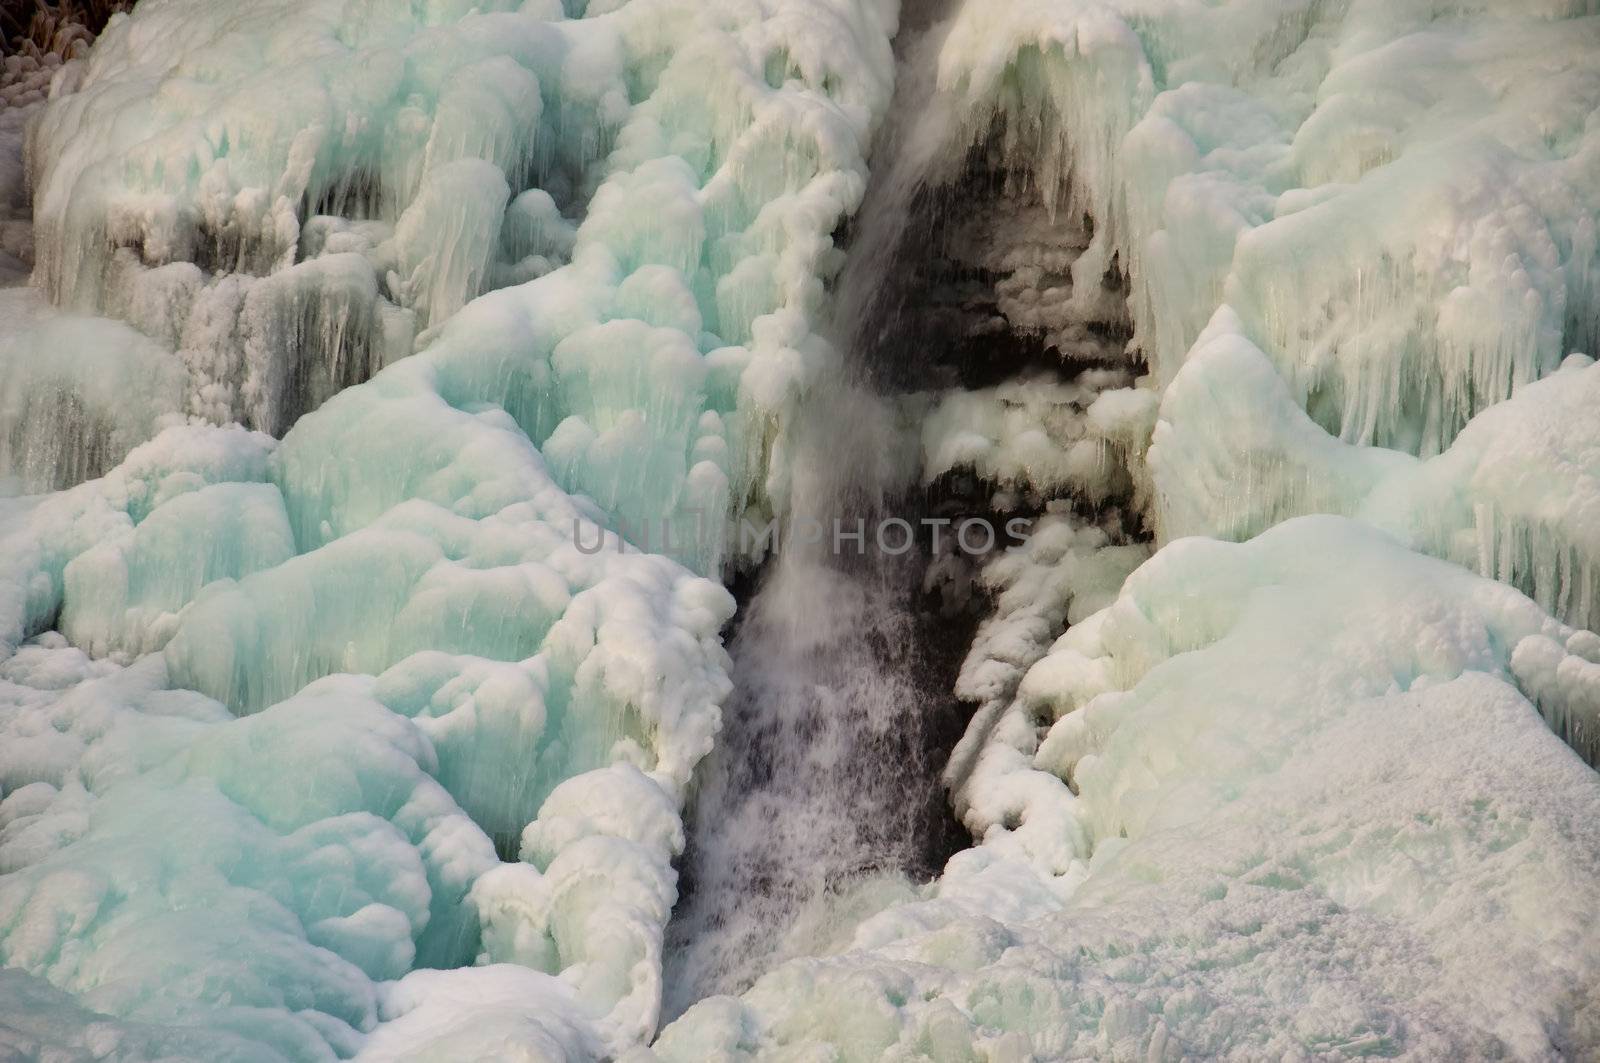 Frozen waterfall by GryT